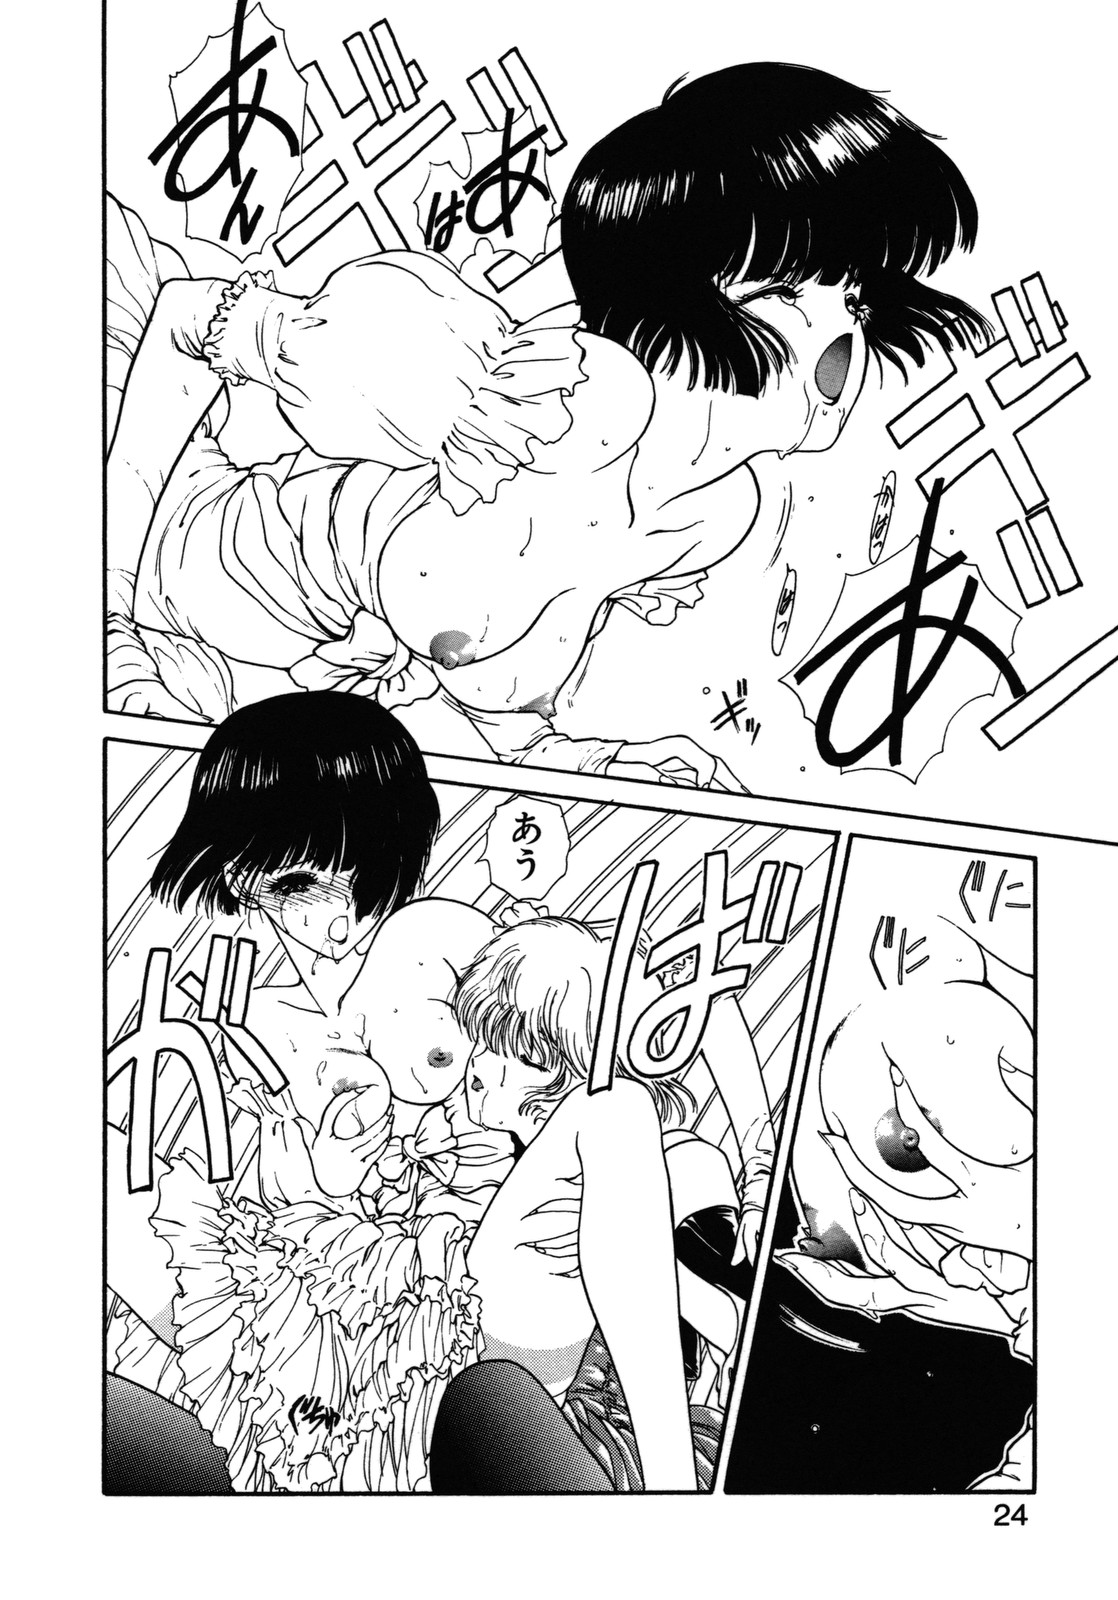 [Utatane Hiroyuki] COUNT DOWN page 25 full